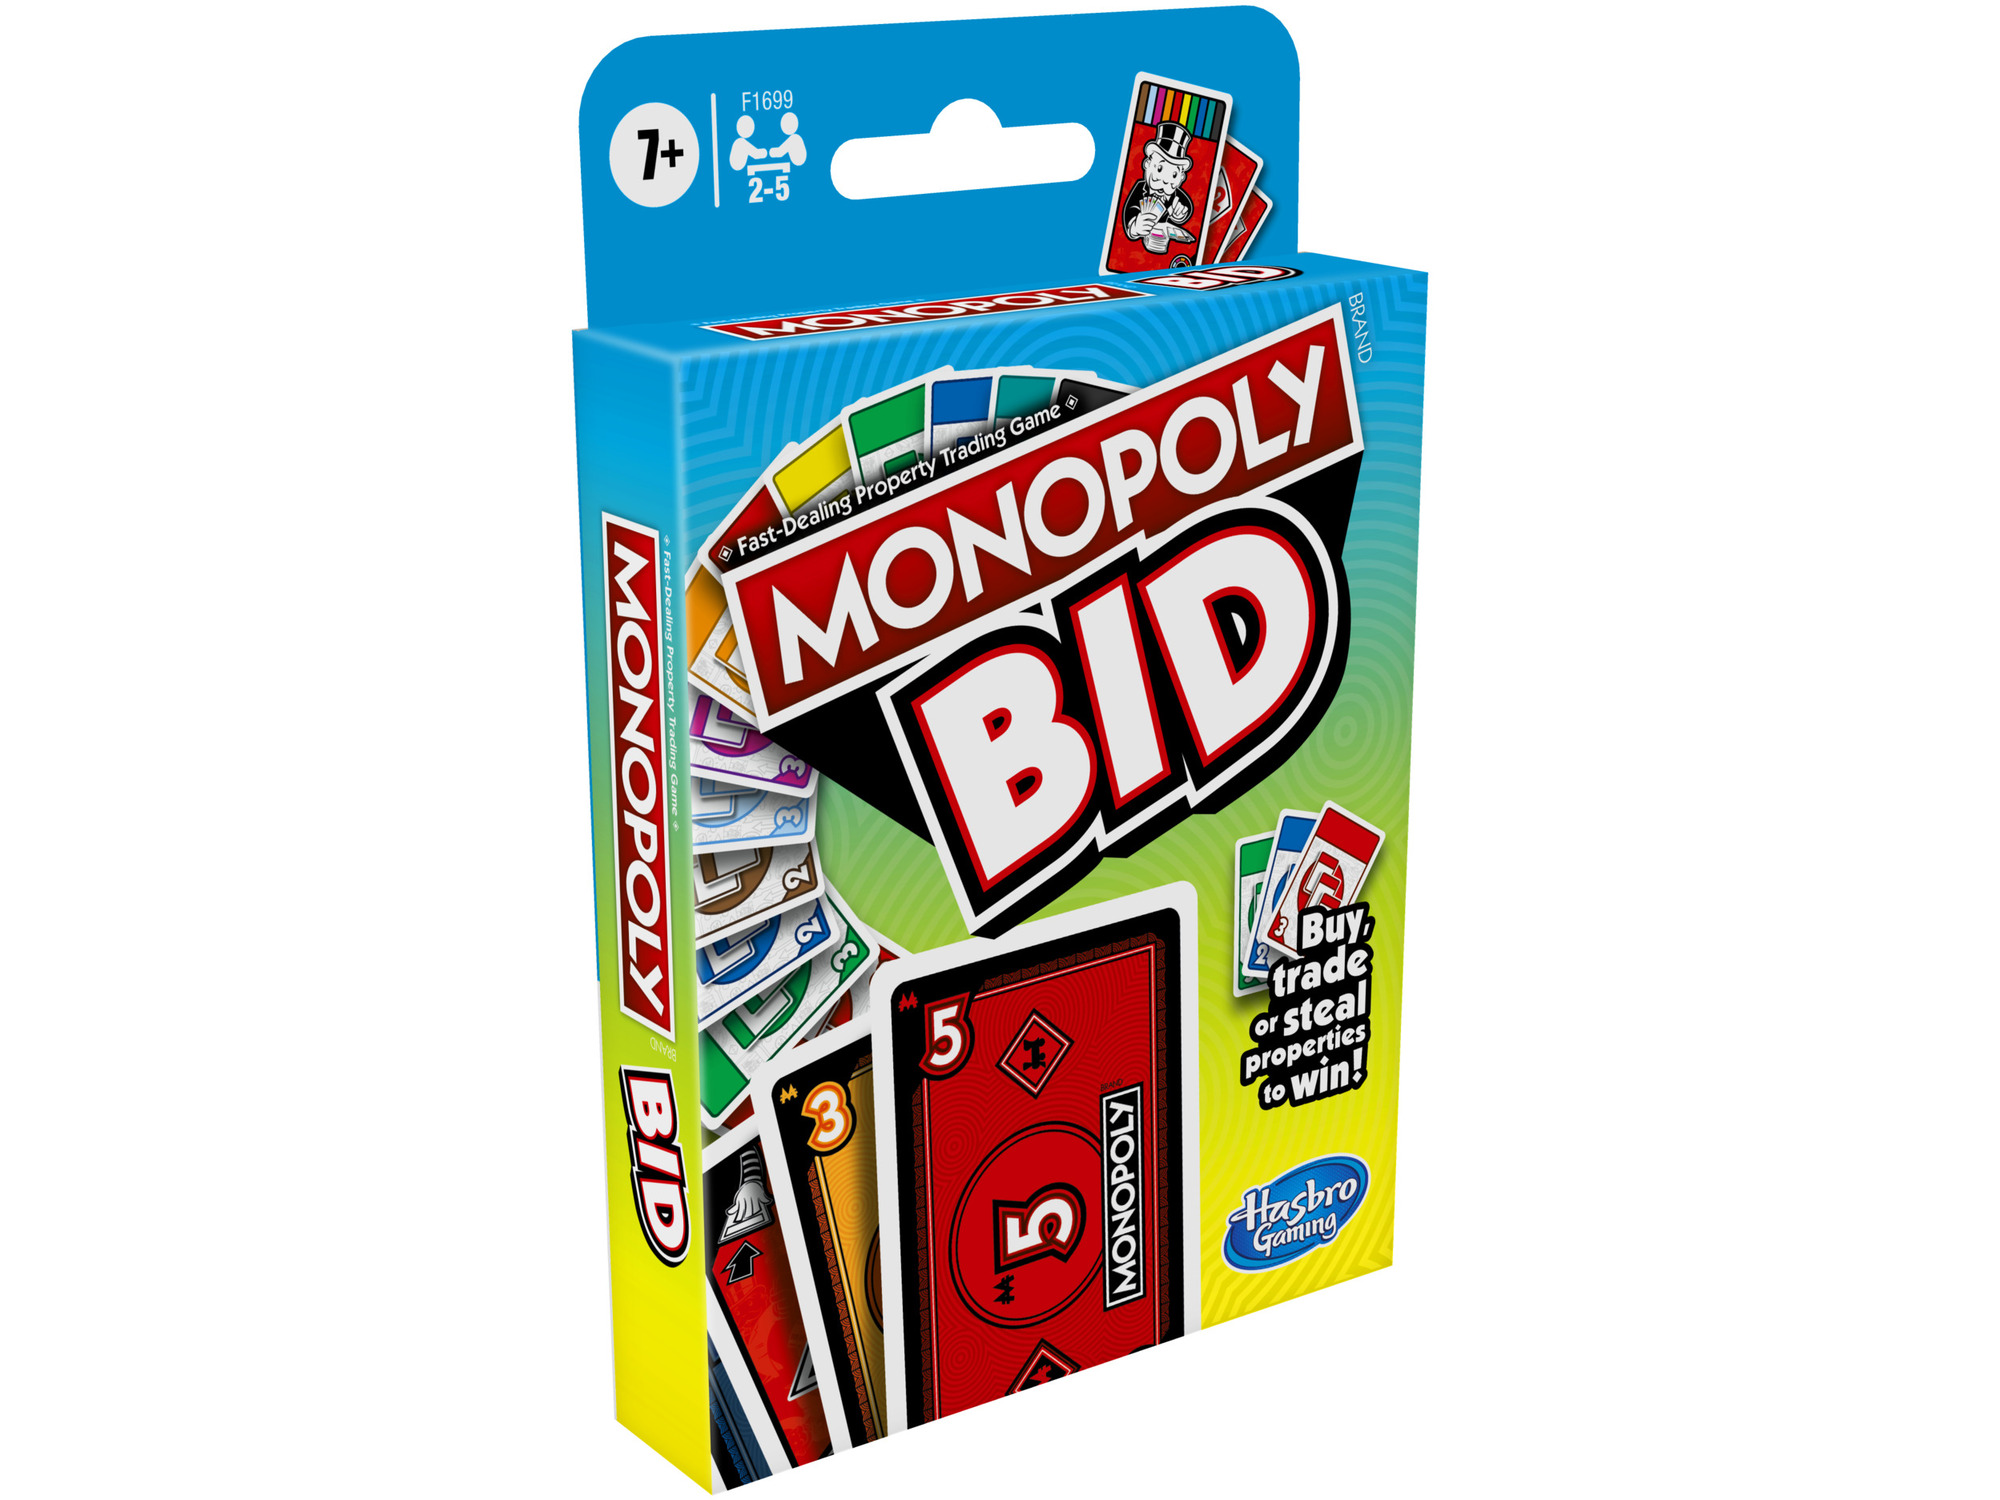 Monopoly družabna igra Bid